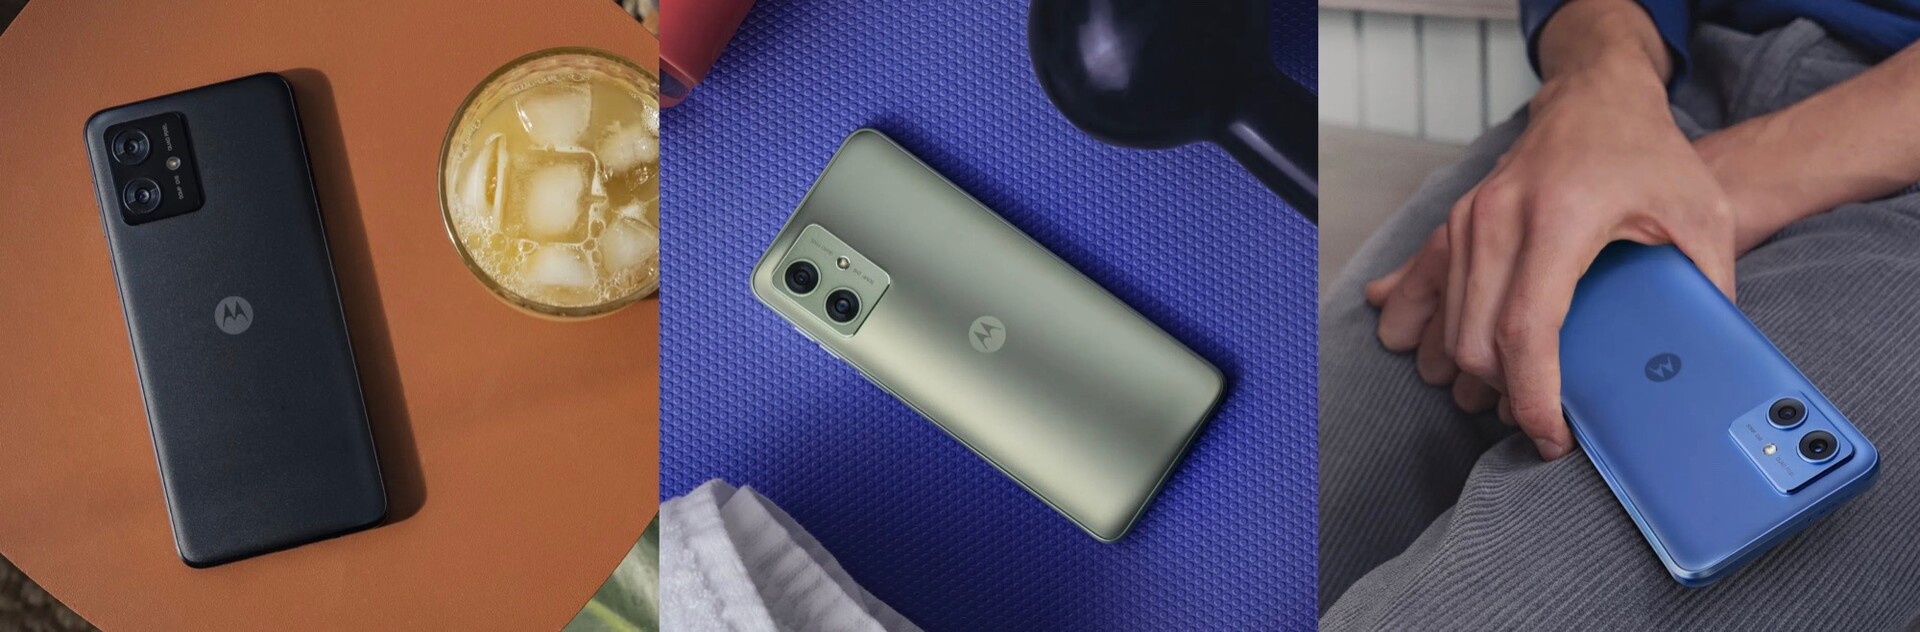 Motorola prepara el lanzamiento del Moto G54 5G con cámara de 50